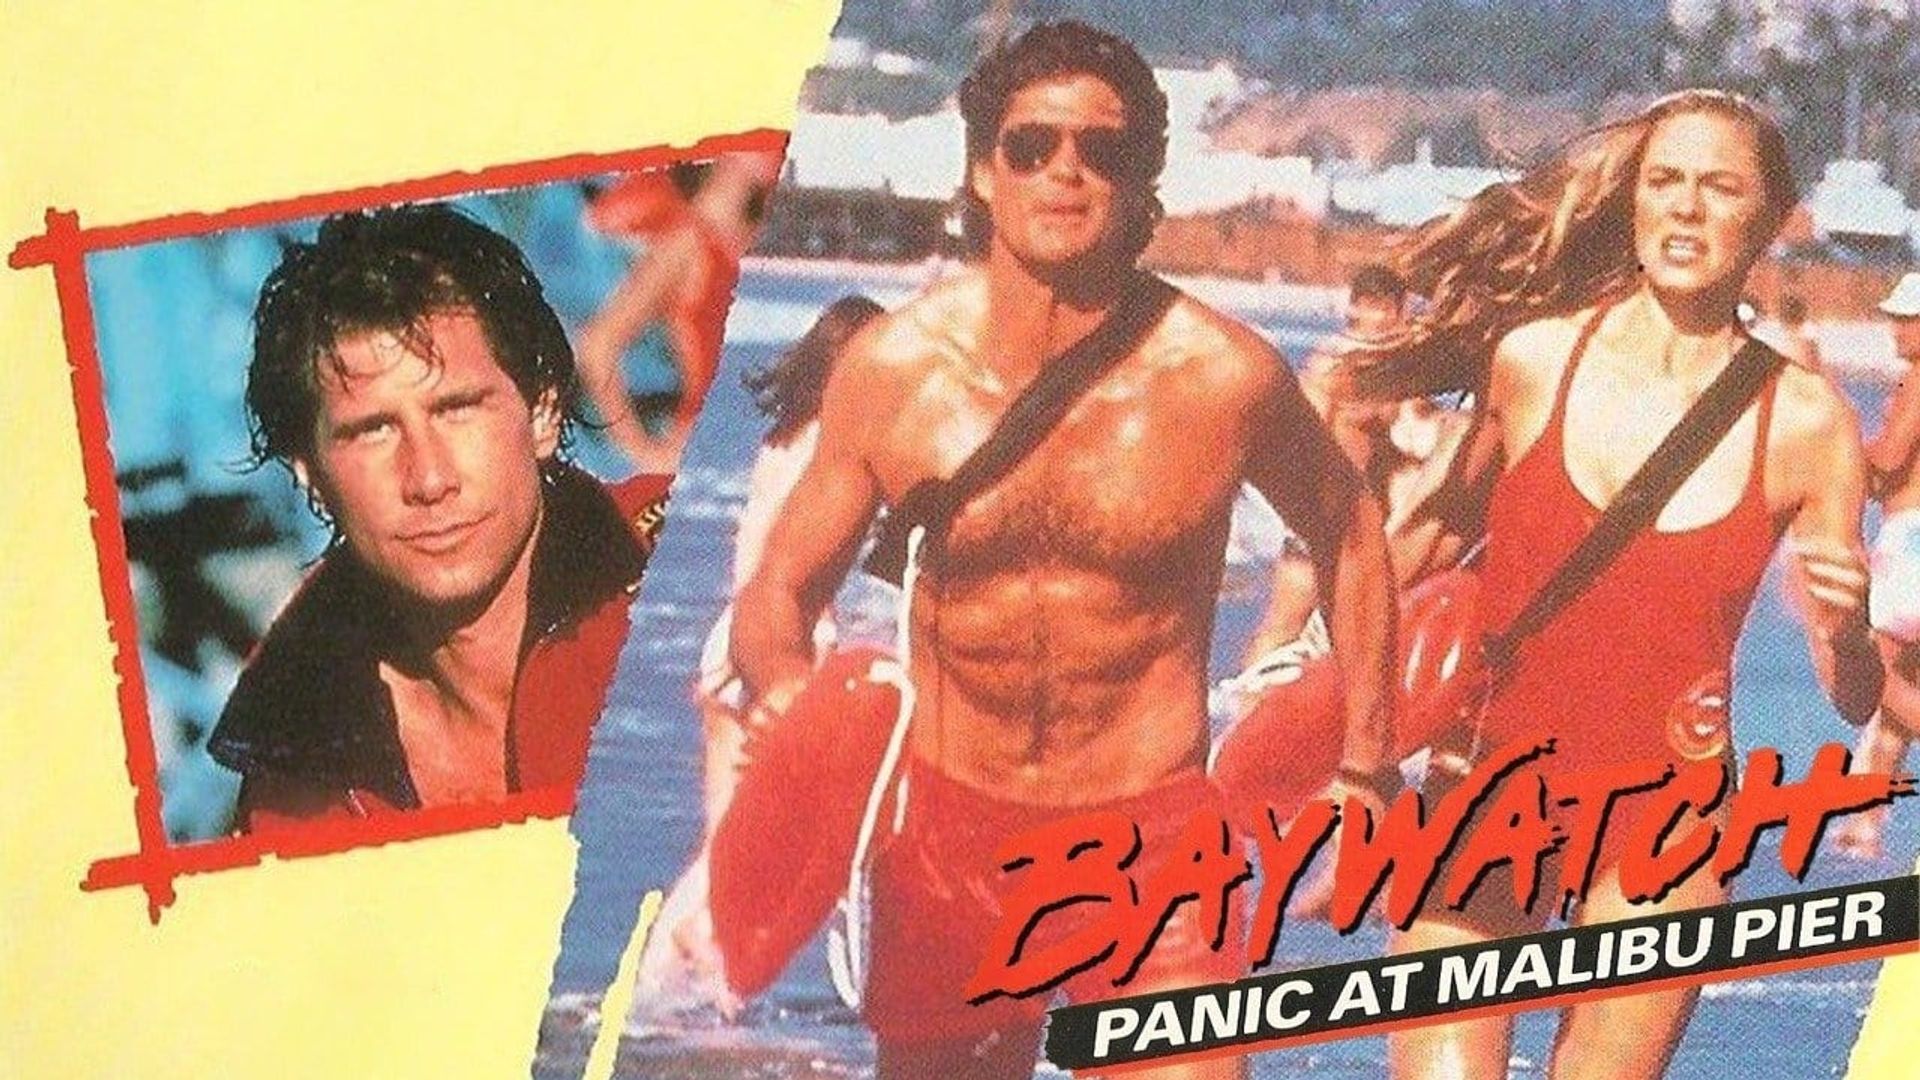 Baywatch: Panic at Malibu Pier background